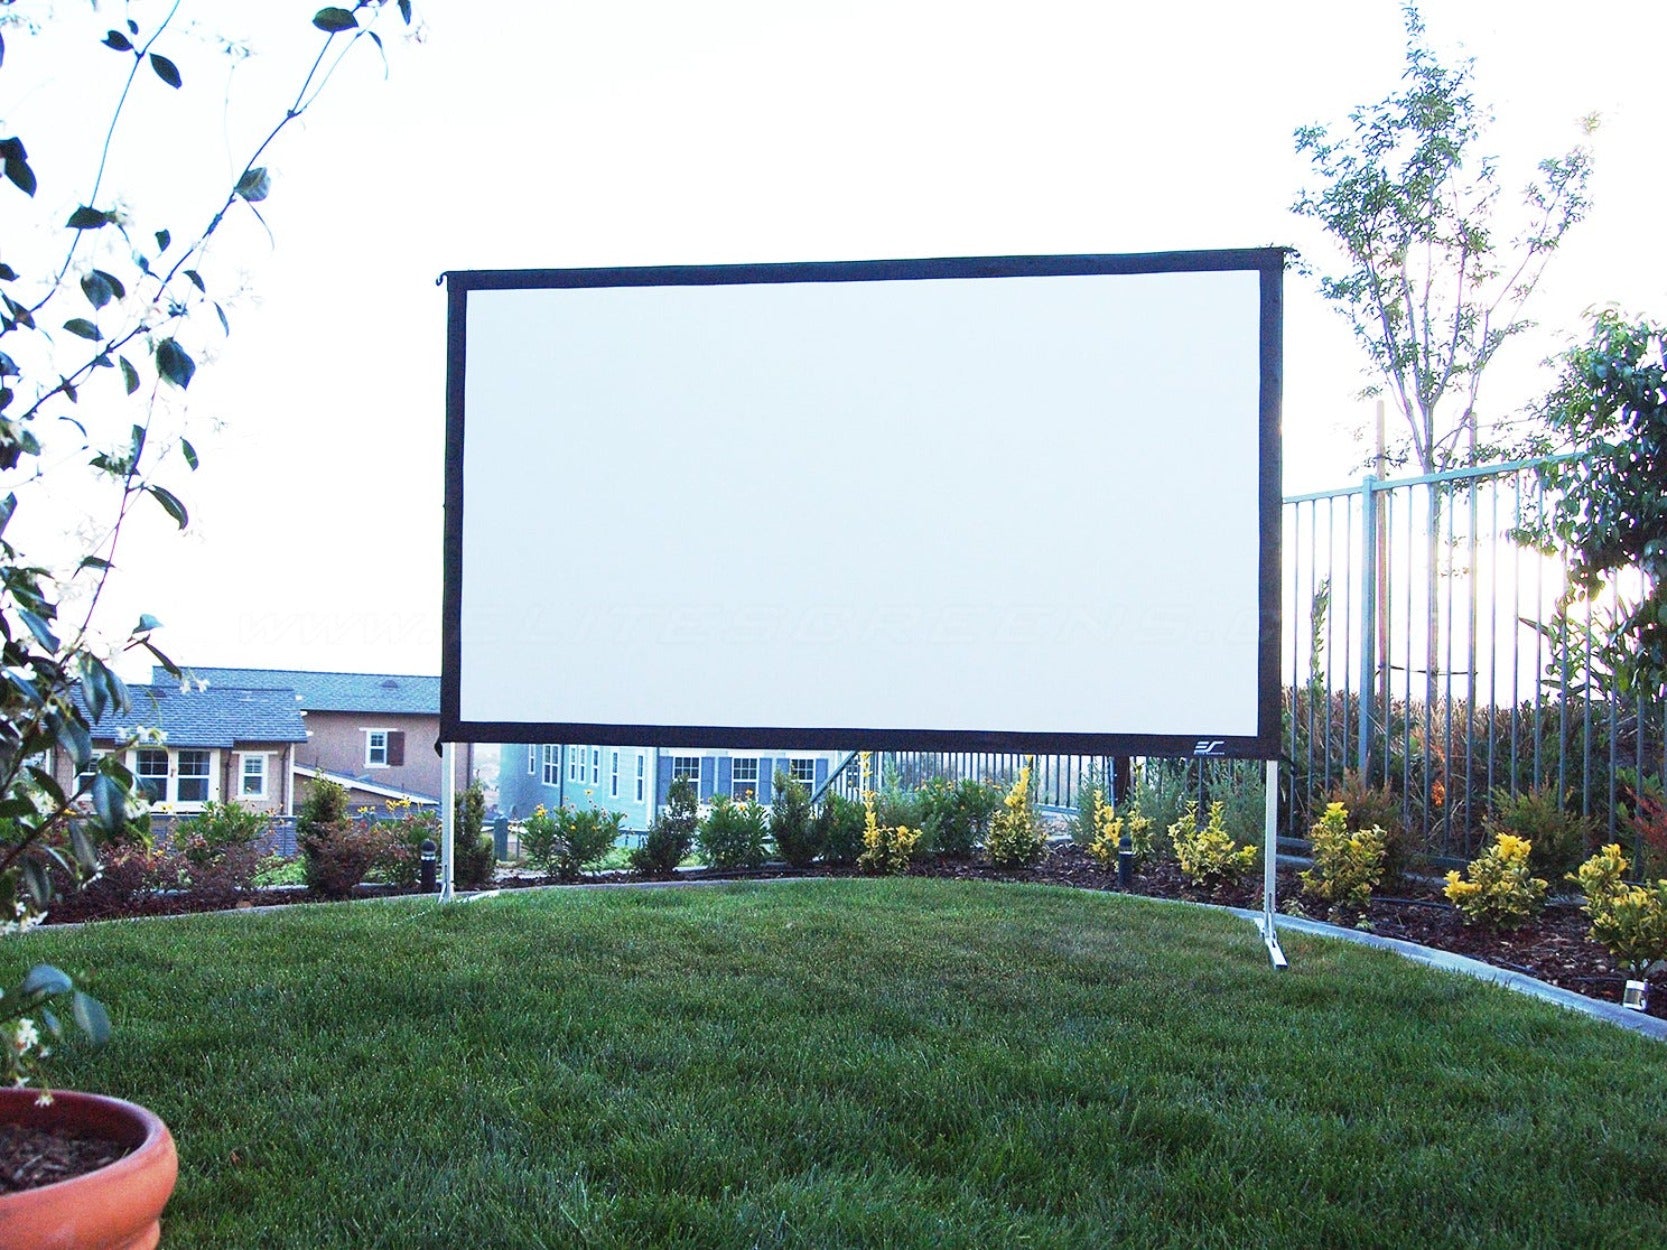 Yard master Elite screens mobile outdoor projection screens Leinwand für Außenbereich